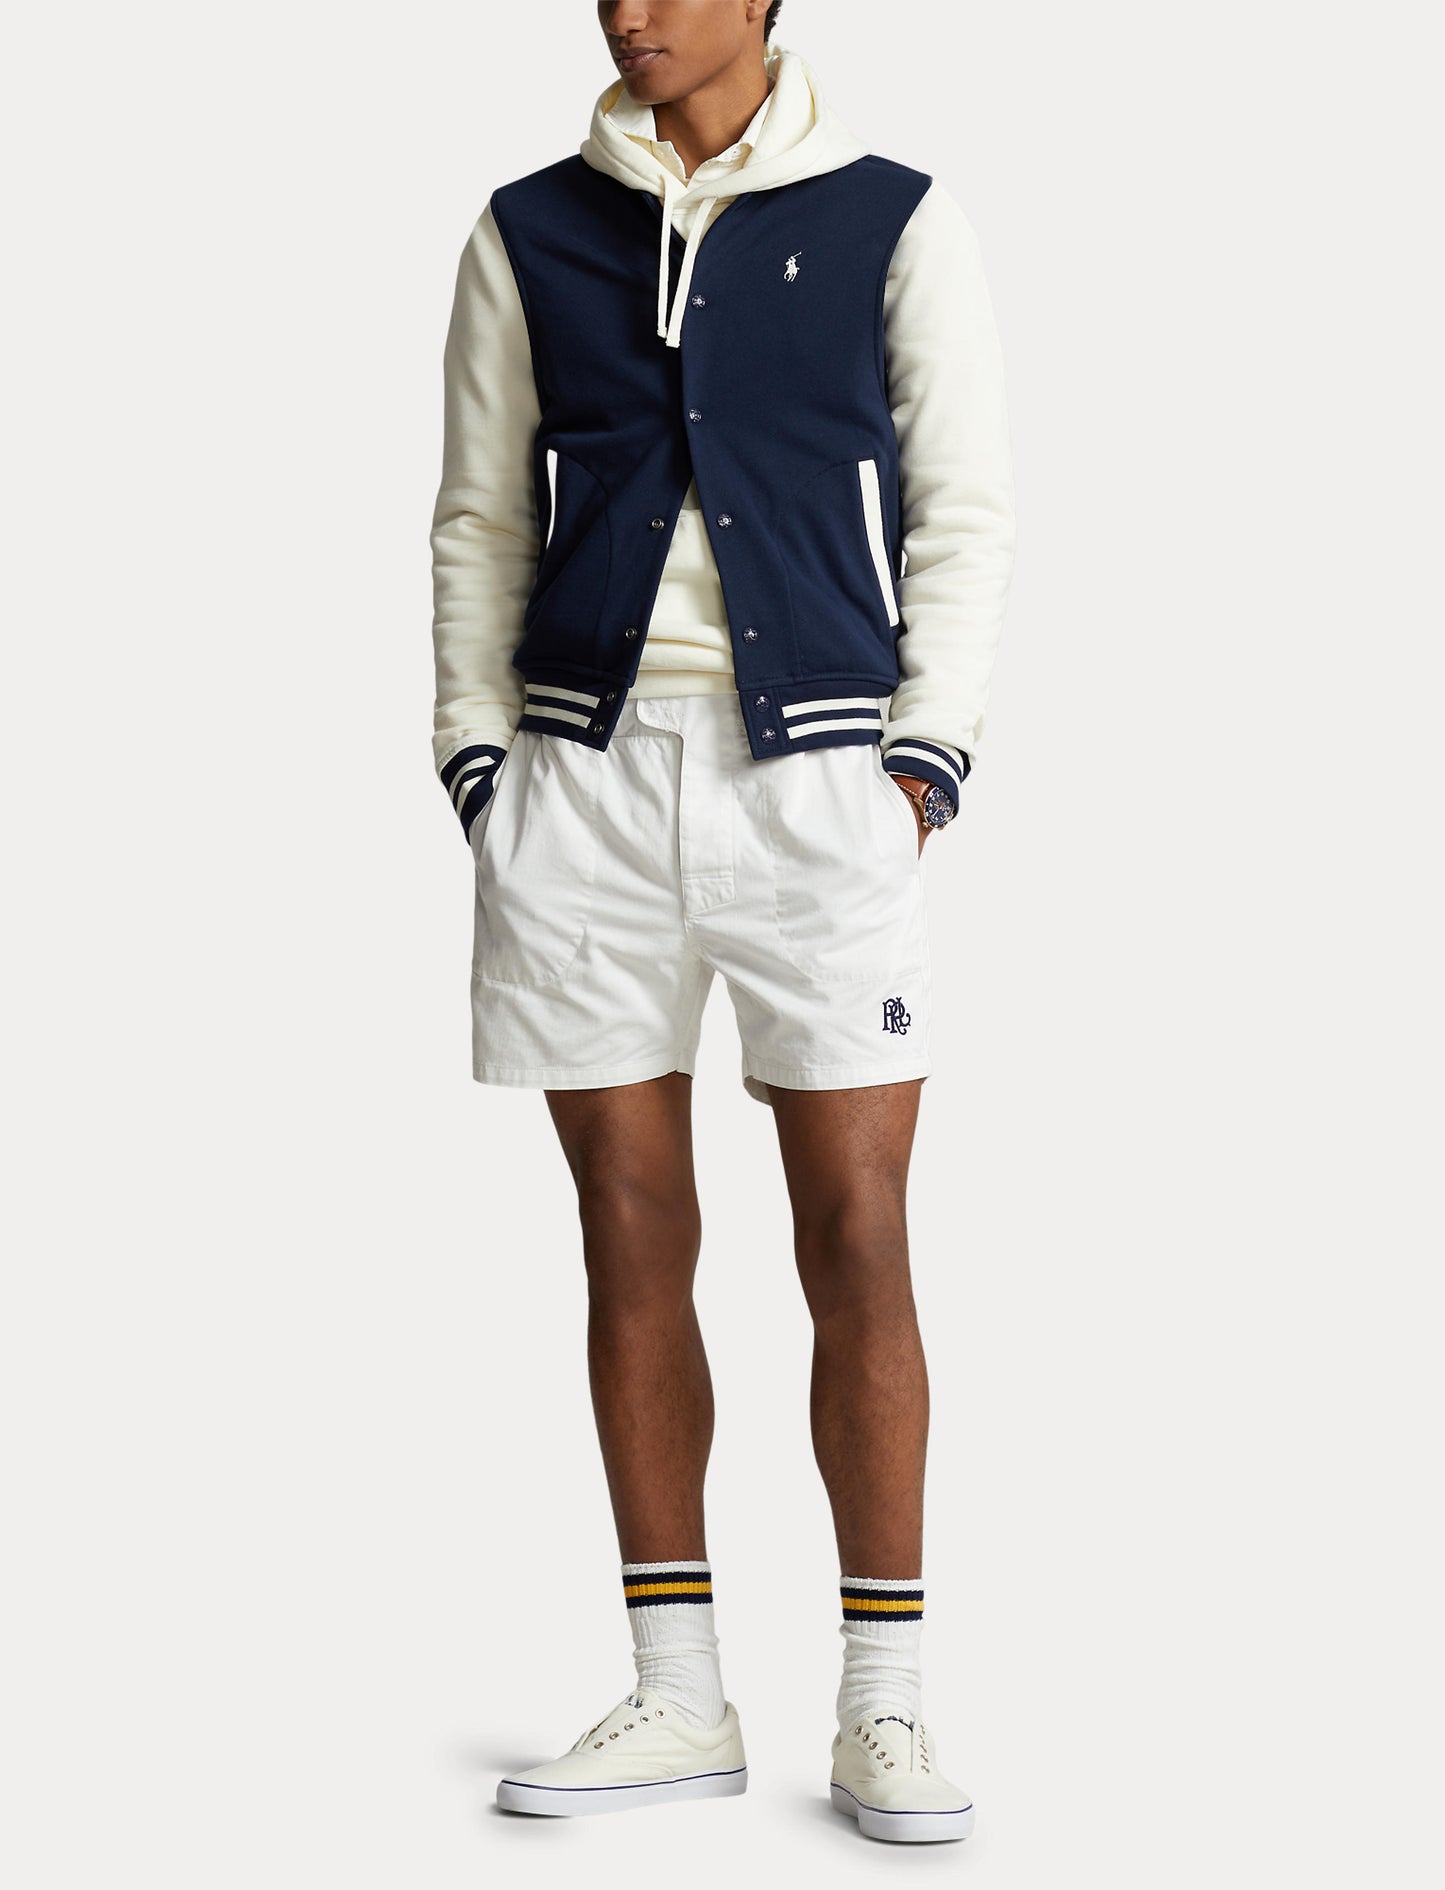 Polo Ralph Lauren LS Sweatshirt Navy/Cream